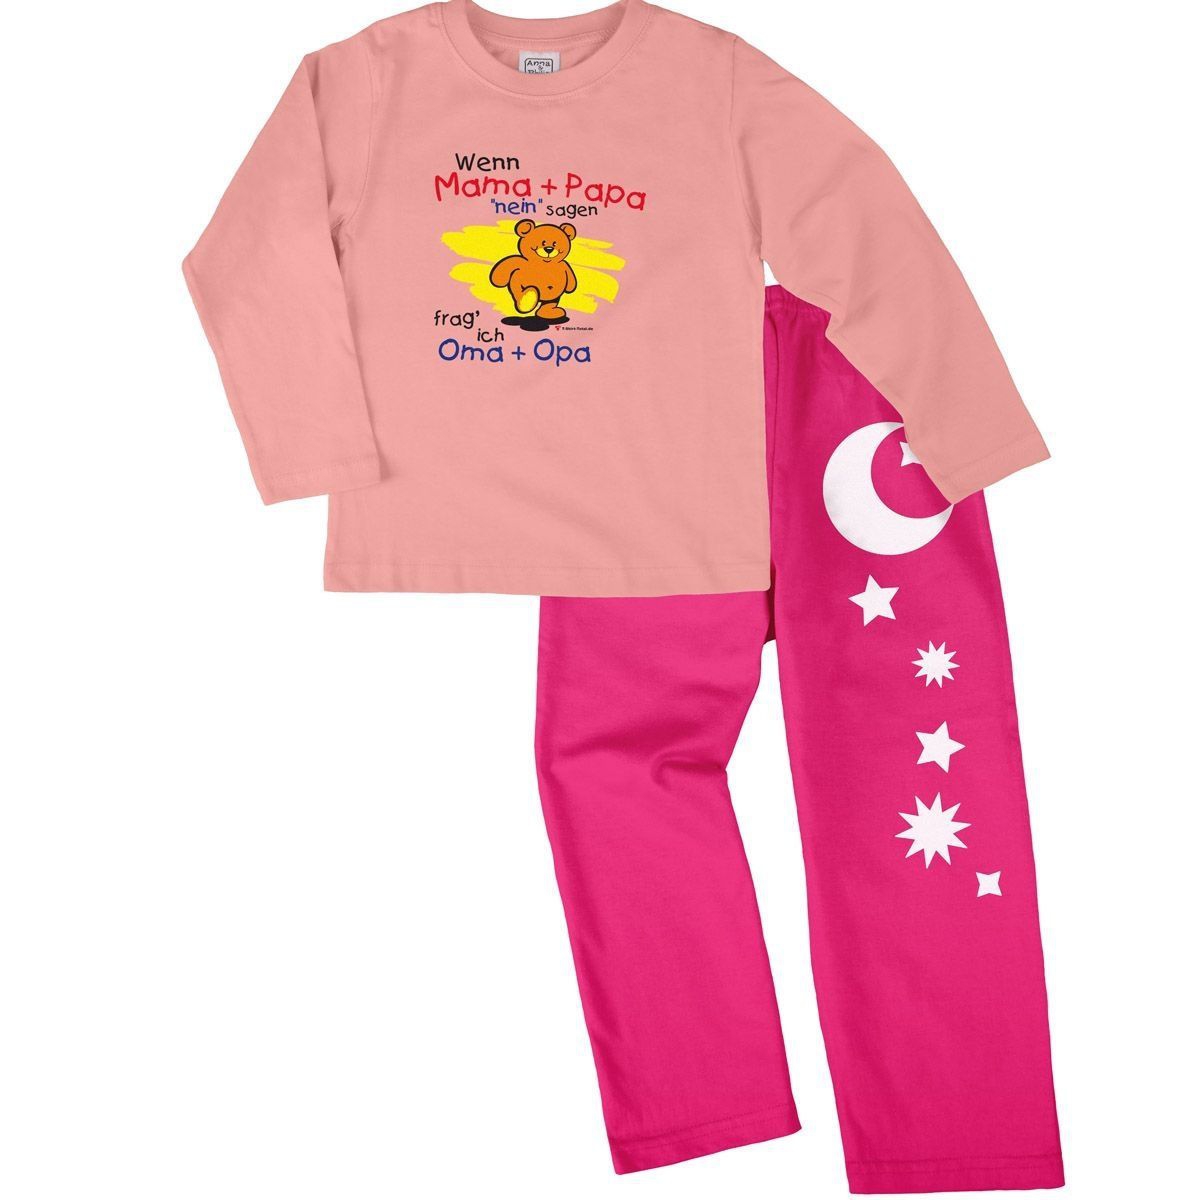 Wenn Mama und Papa nein sagen Pyjama Set rosa / pink 134 / 140